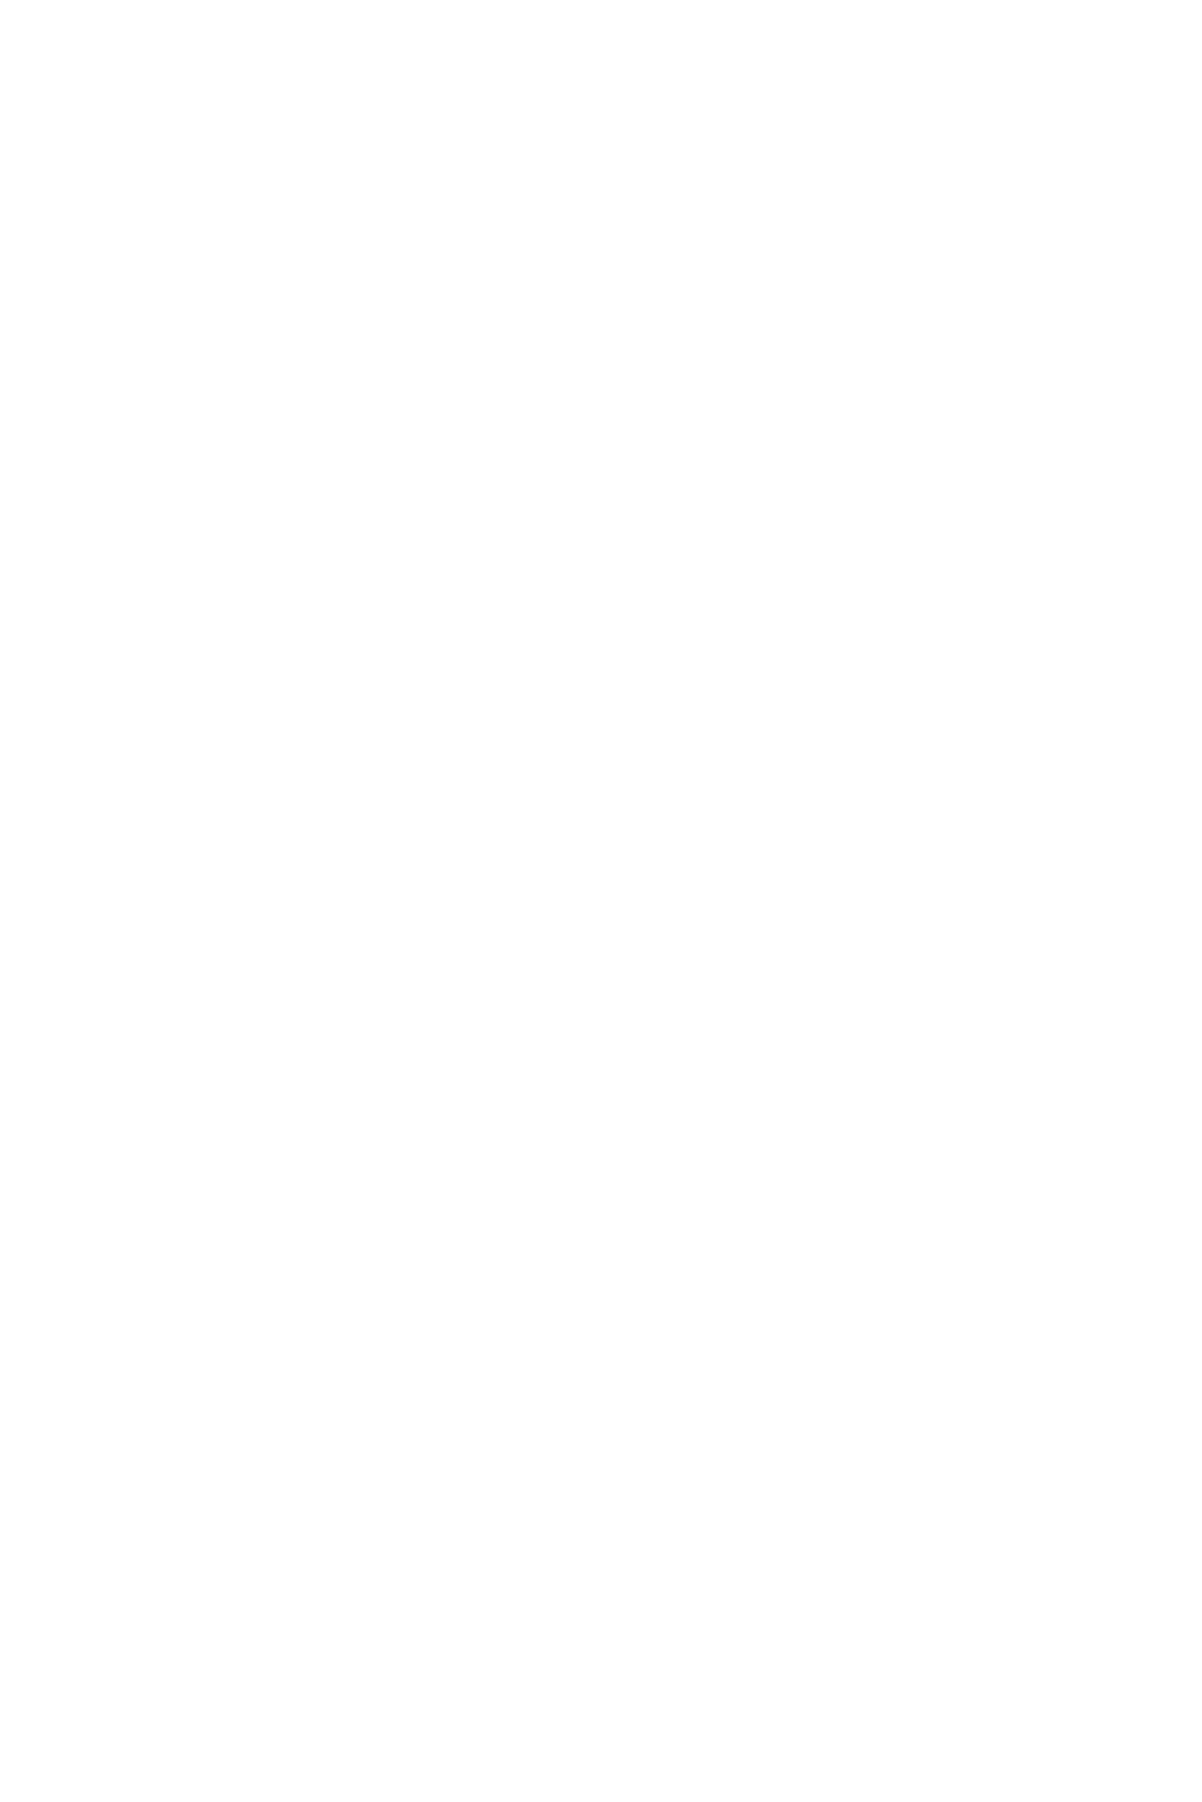 Sushi Shin by Miyakawa Official Logo